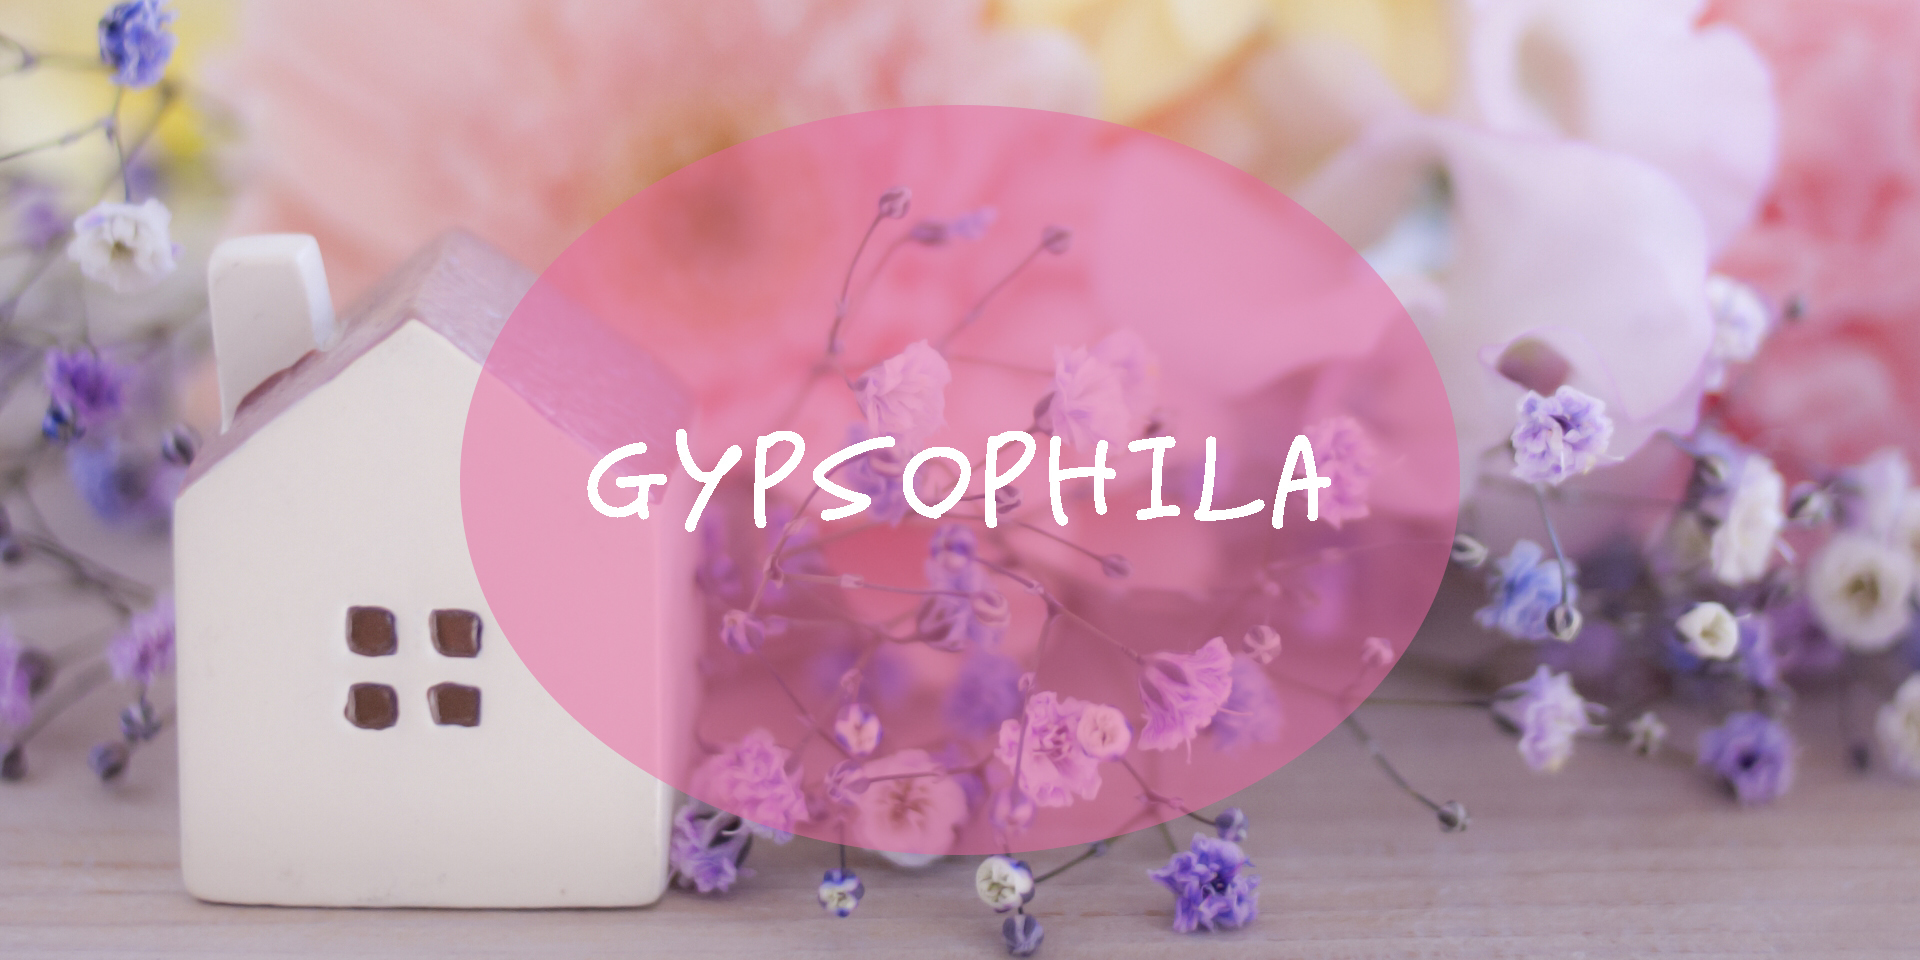 Gypsophila